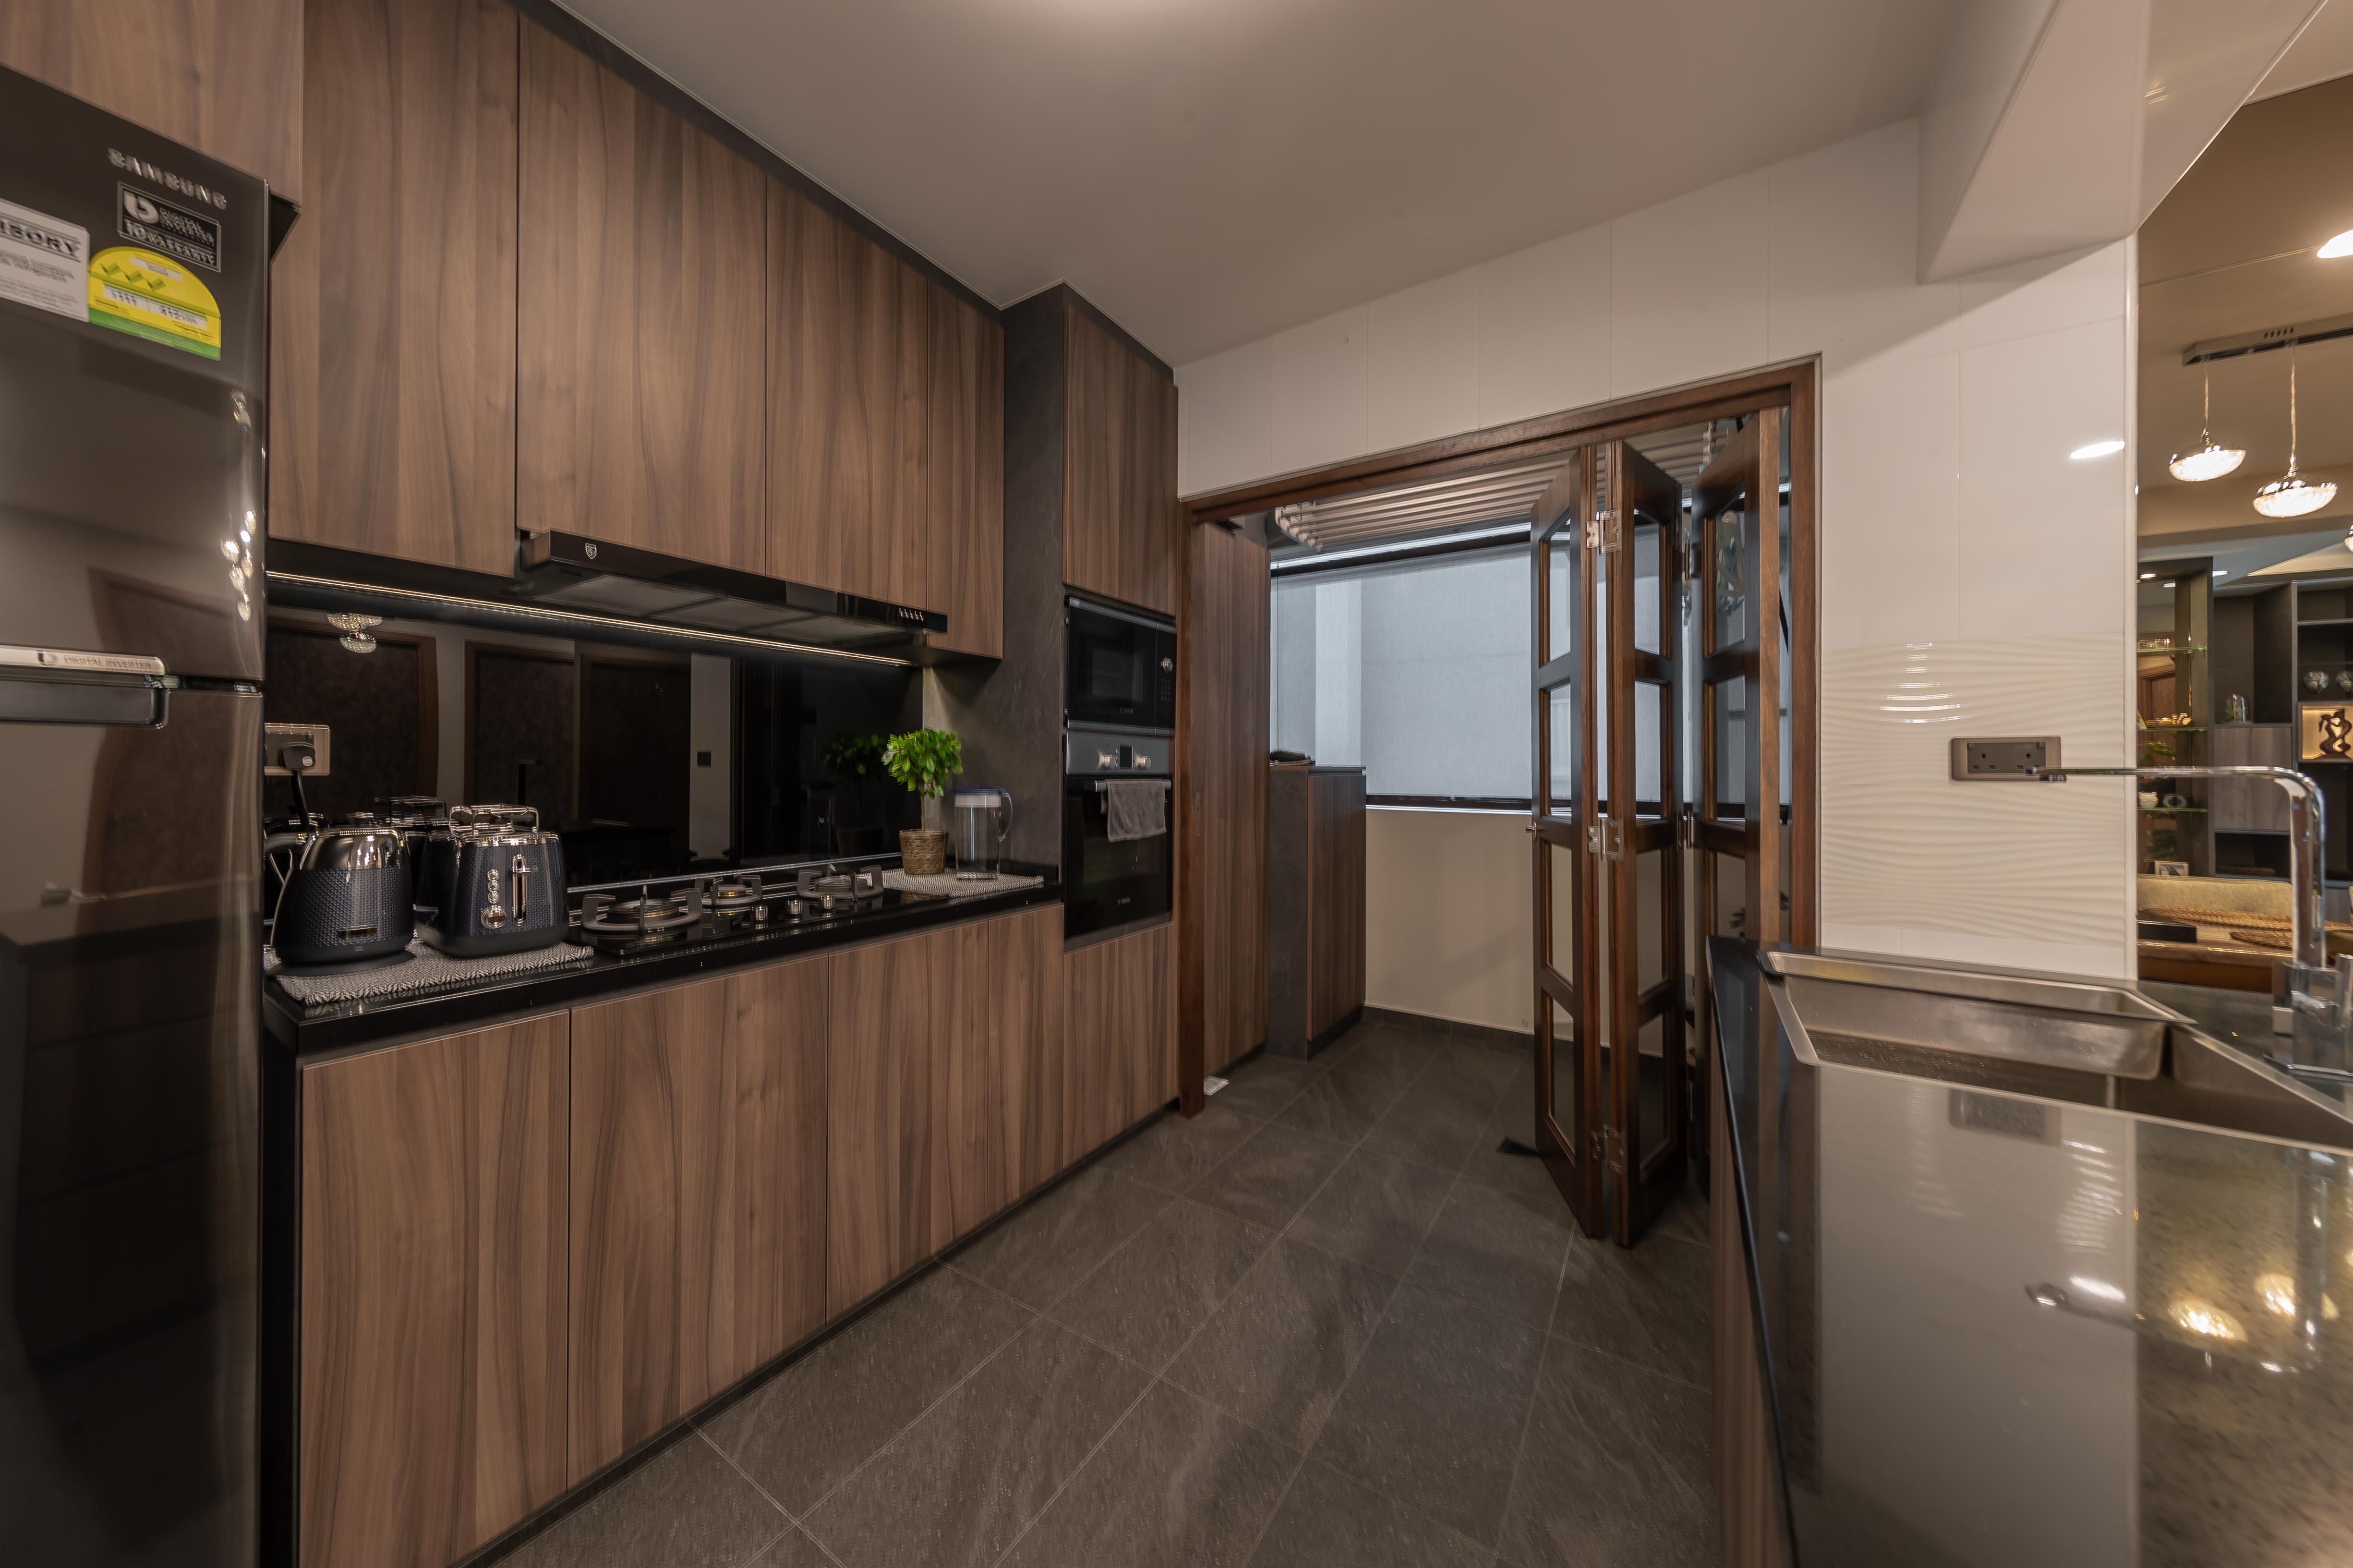 Contemporary, Mediterranean, Resort Design - Kitchen - HDB 4 Room - Design by LOME Interior